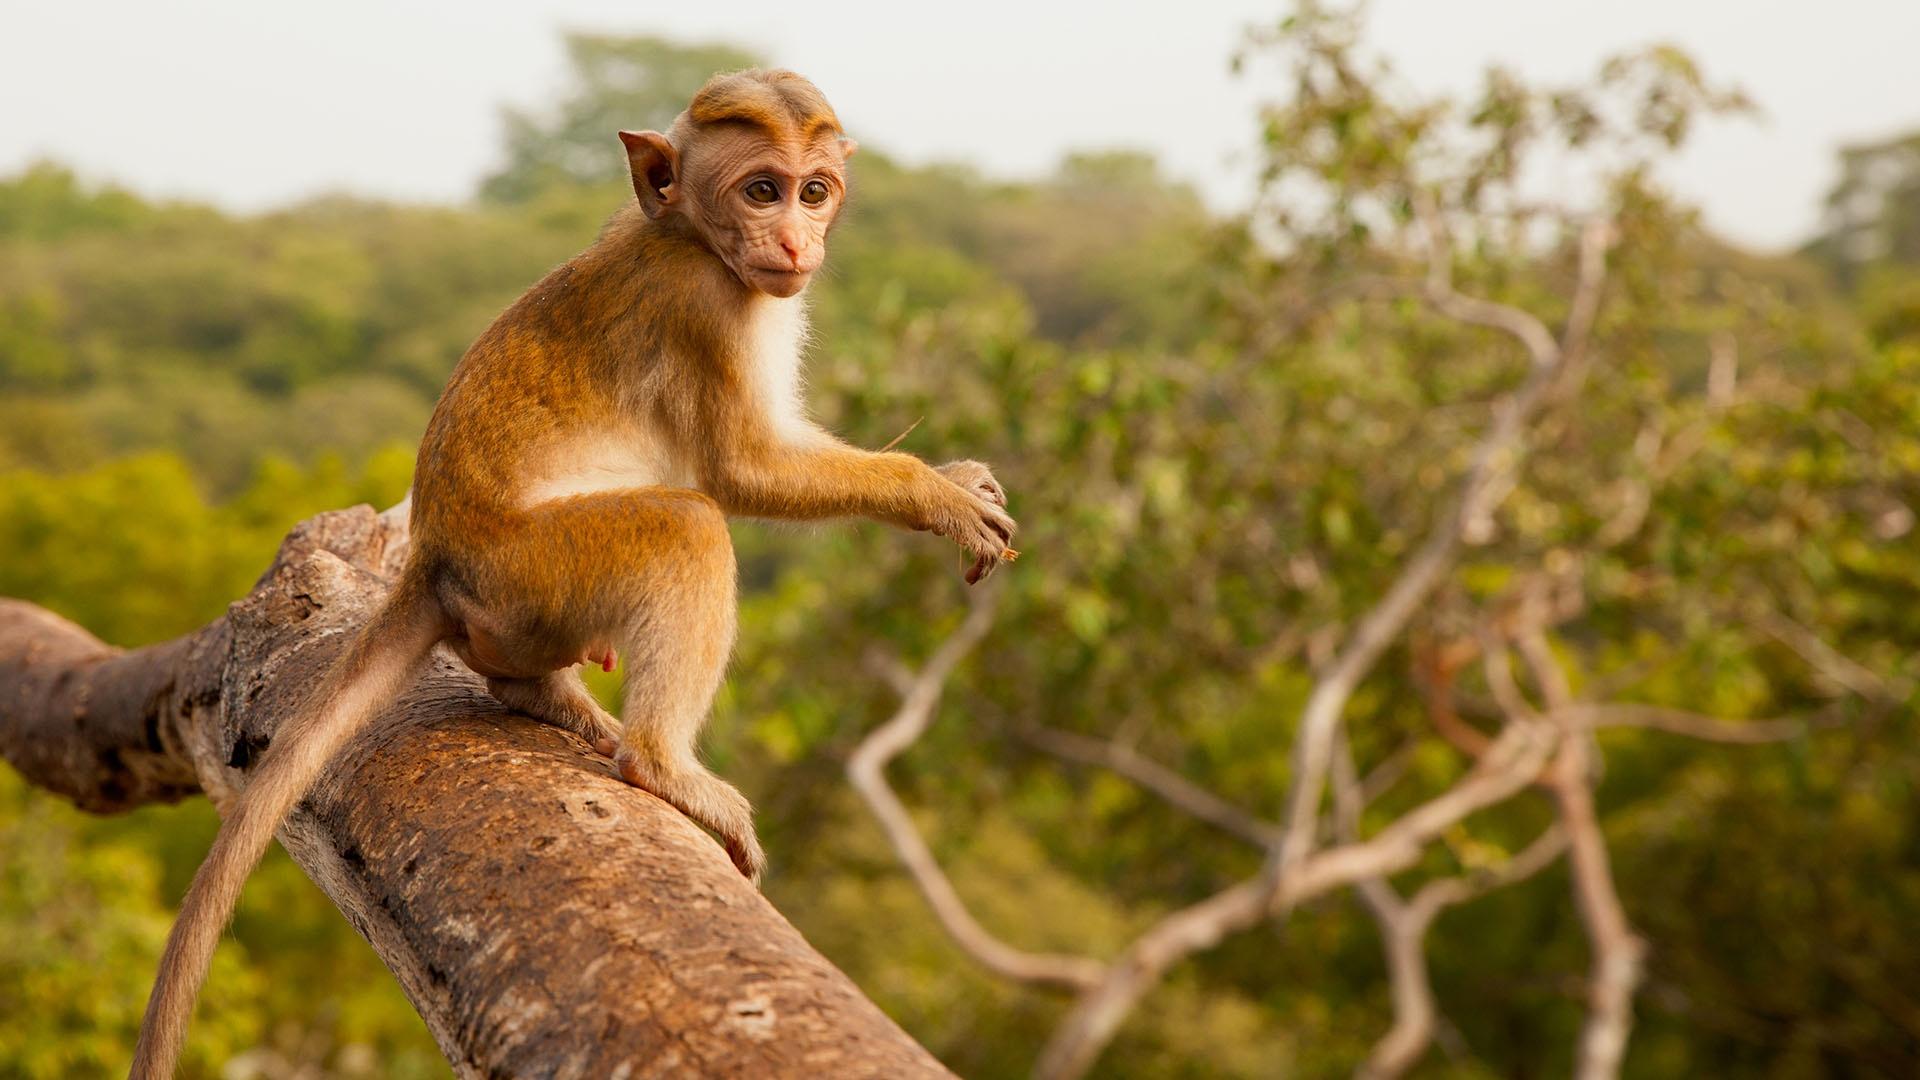 Image of toque macaque, Jazir